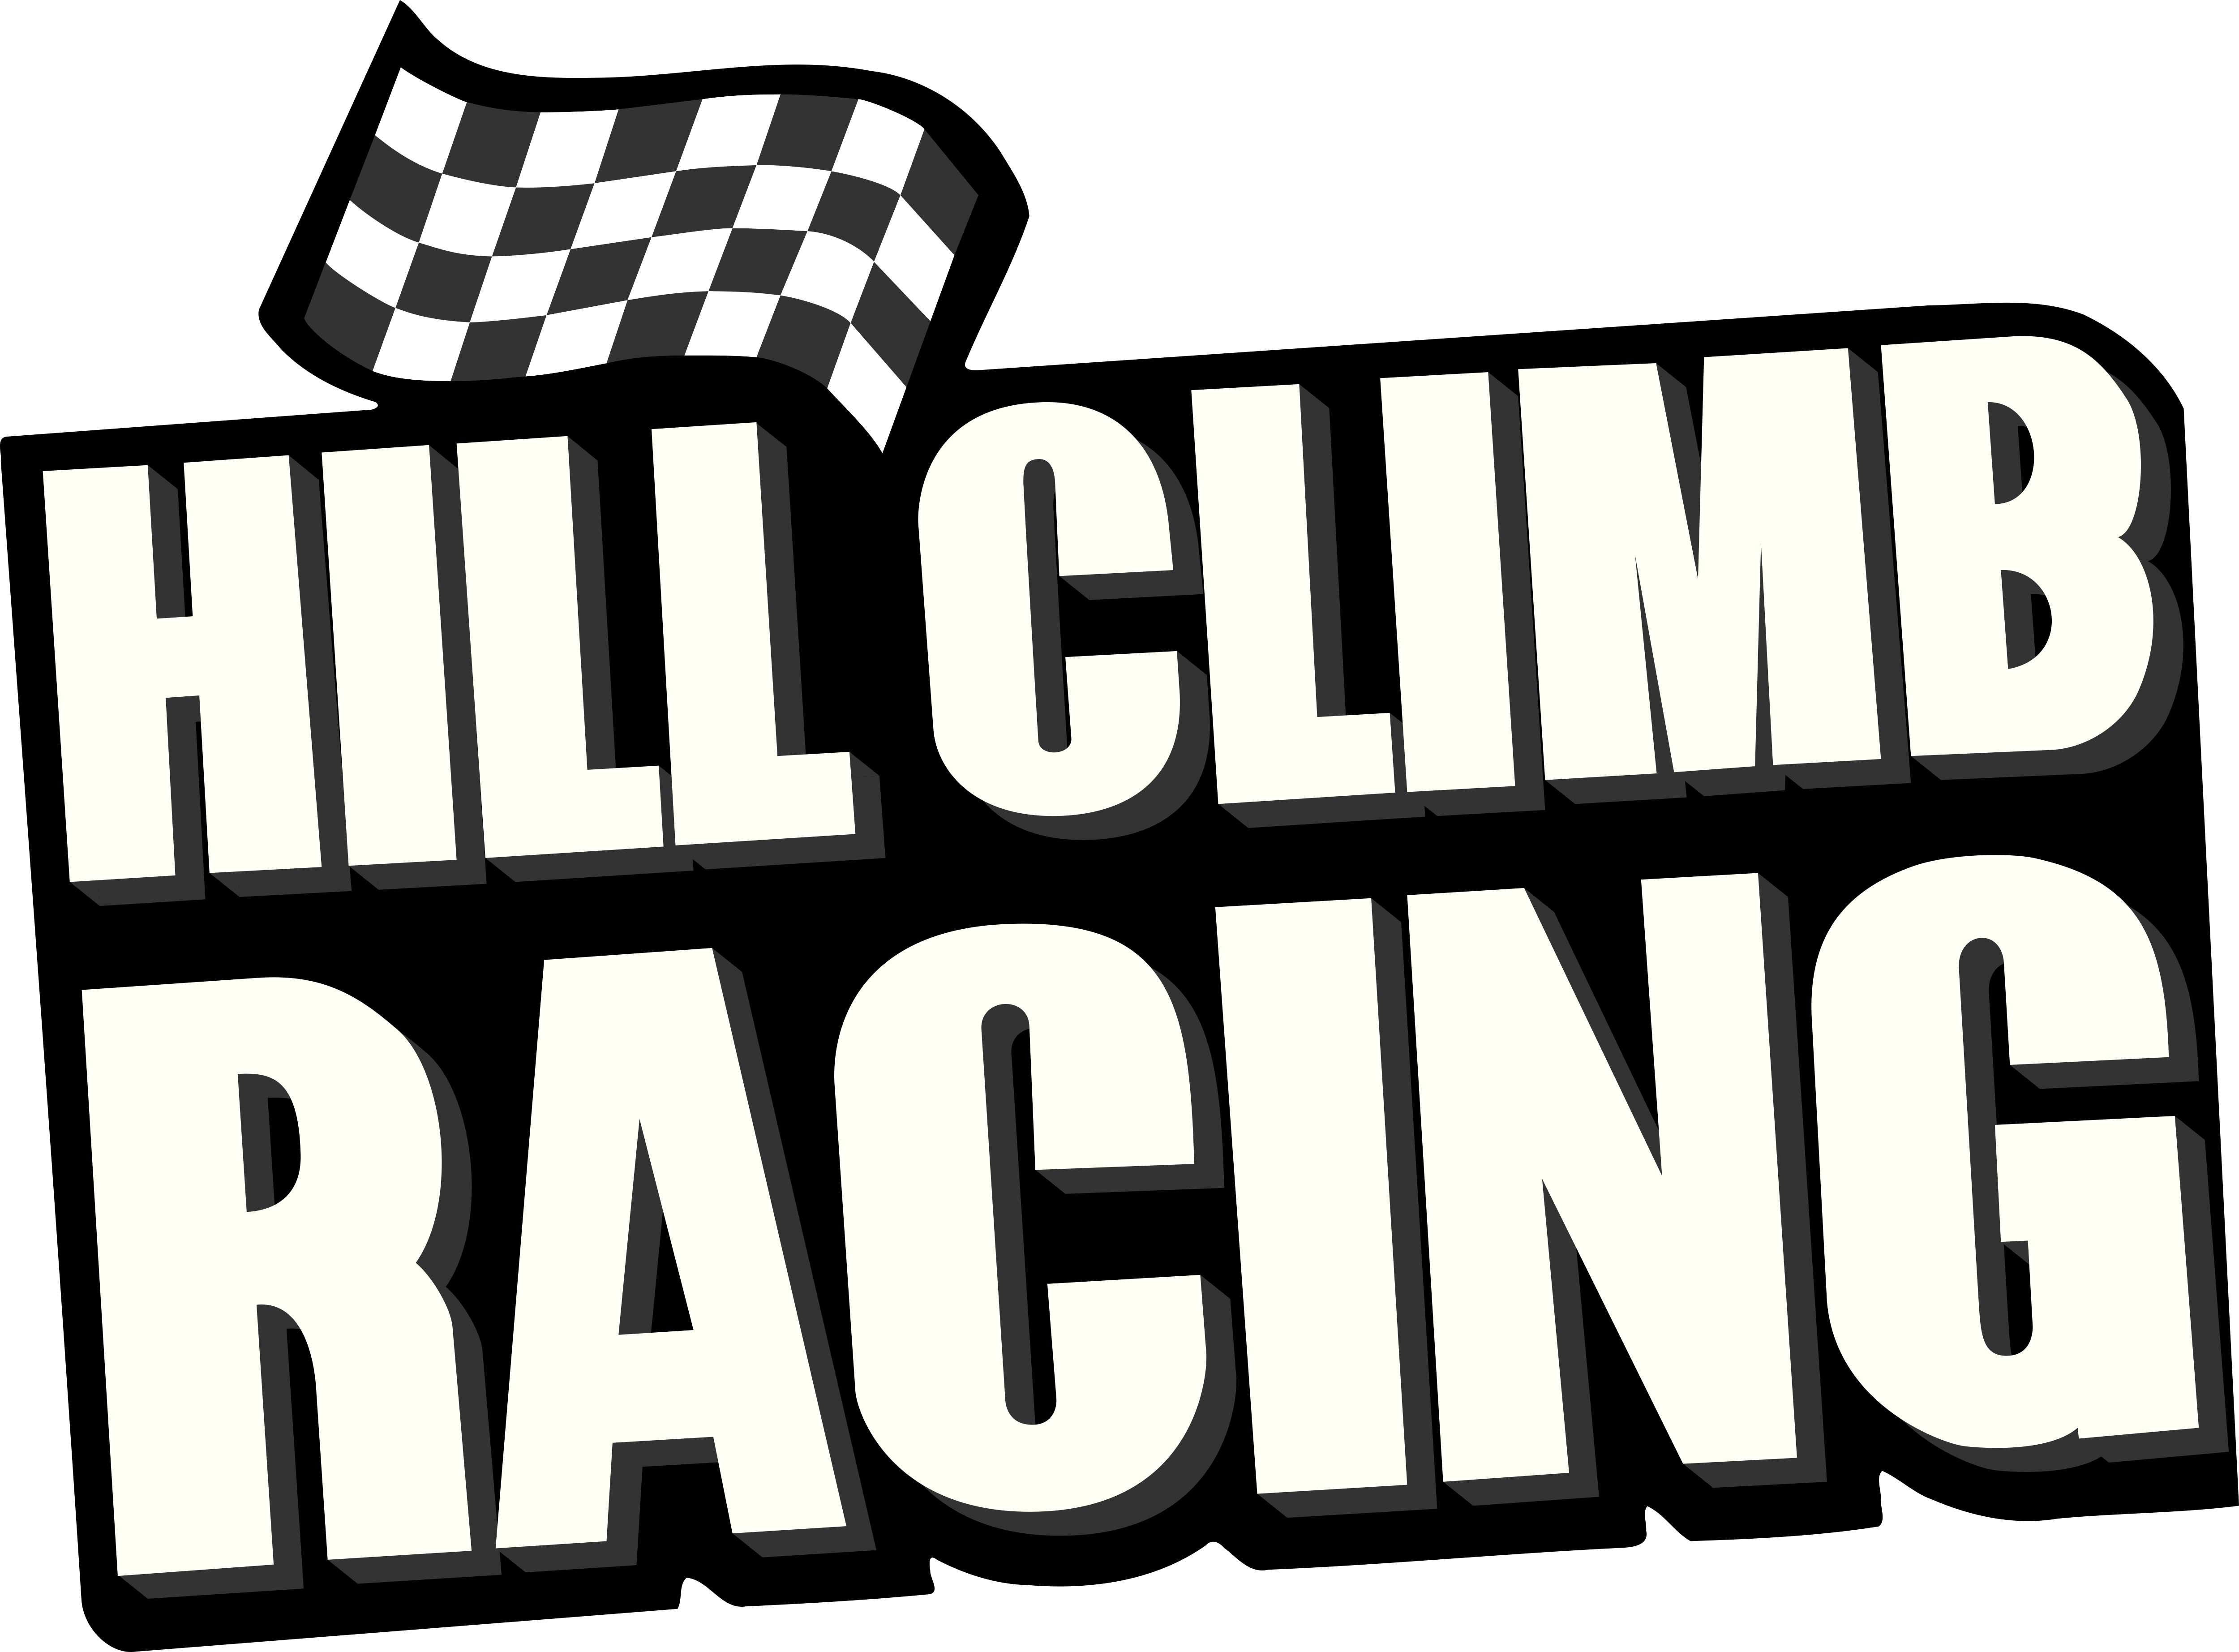 Hill climb racing car. Hill Climb Racing. Hill Climb Racing логотип. Игра Hill Climb Racing 1. Хилклаймб рейсинг.